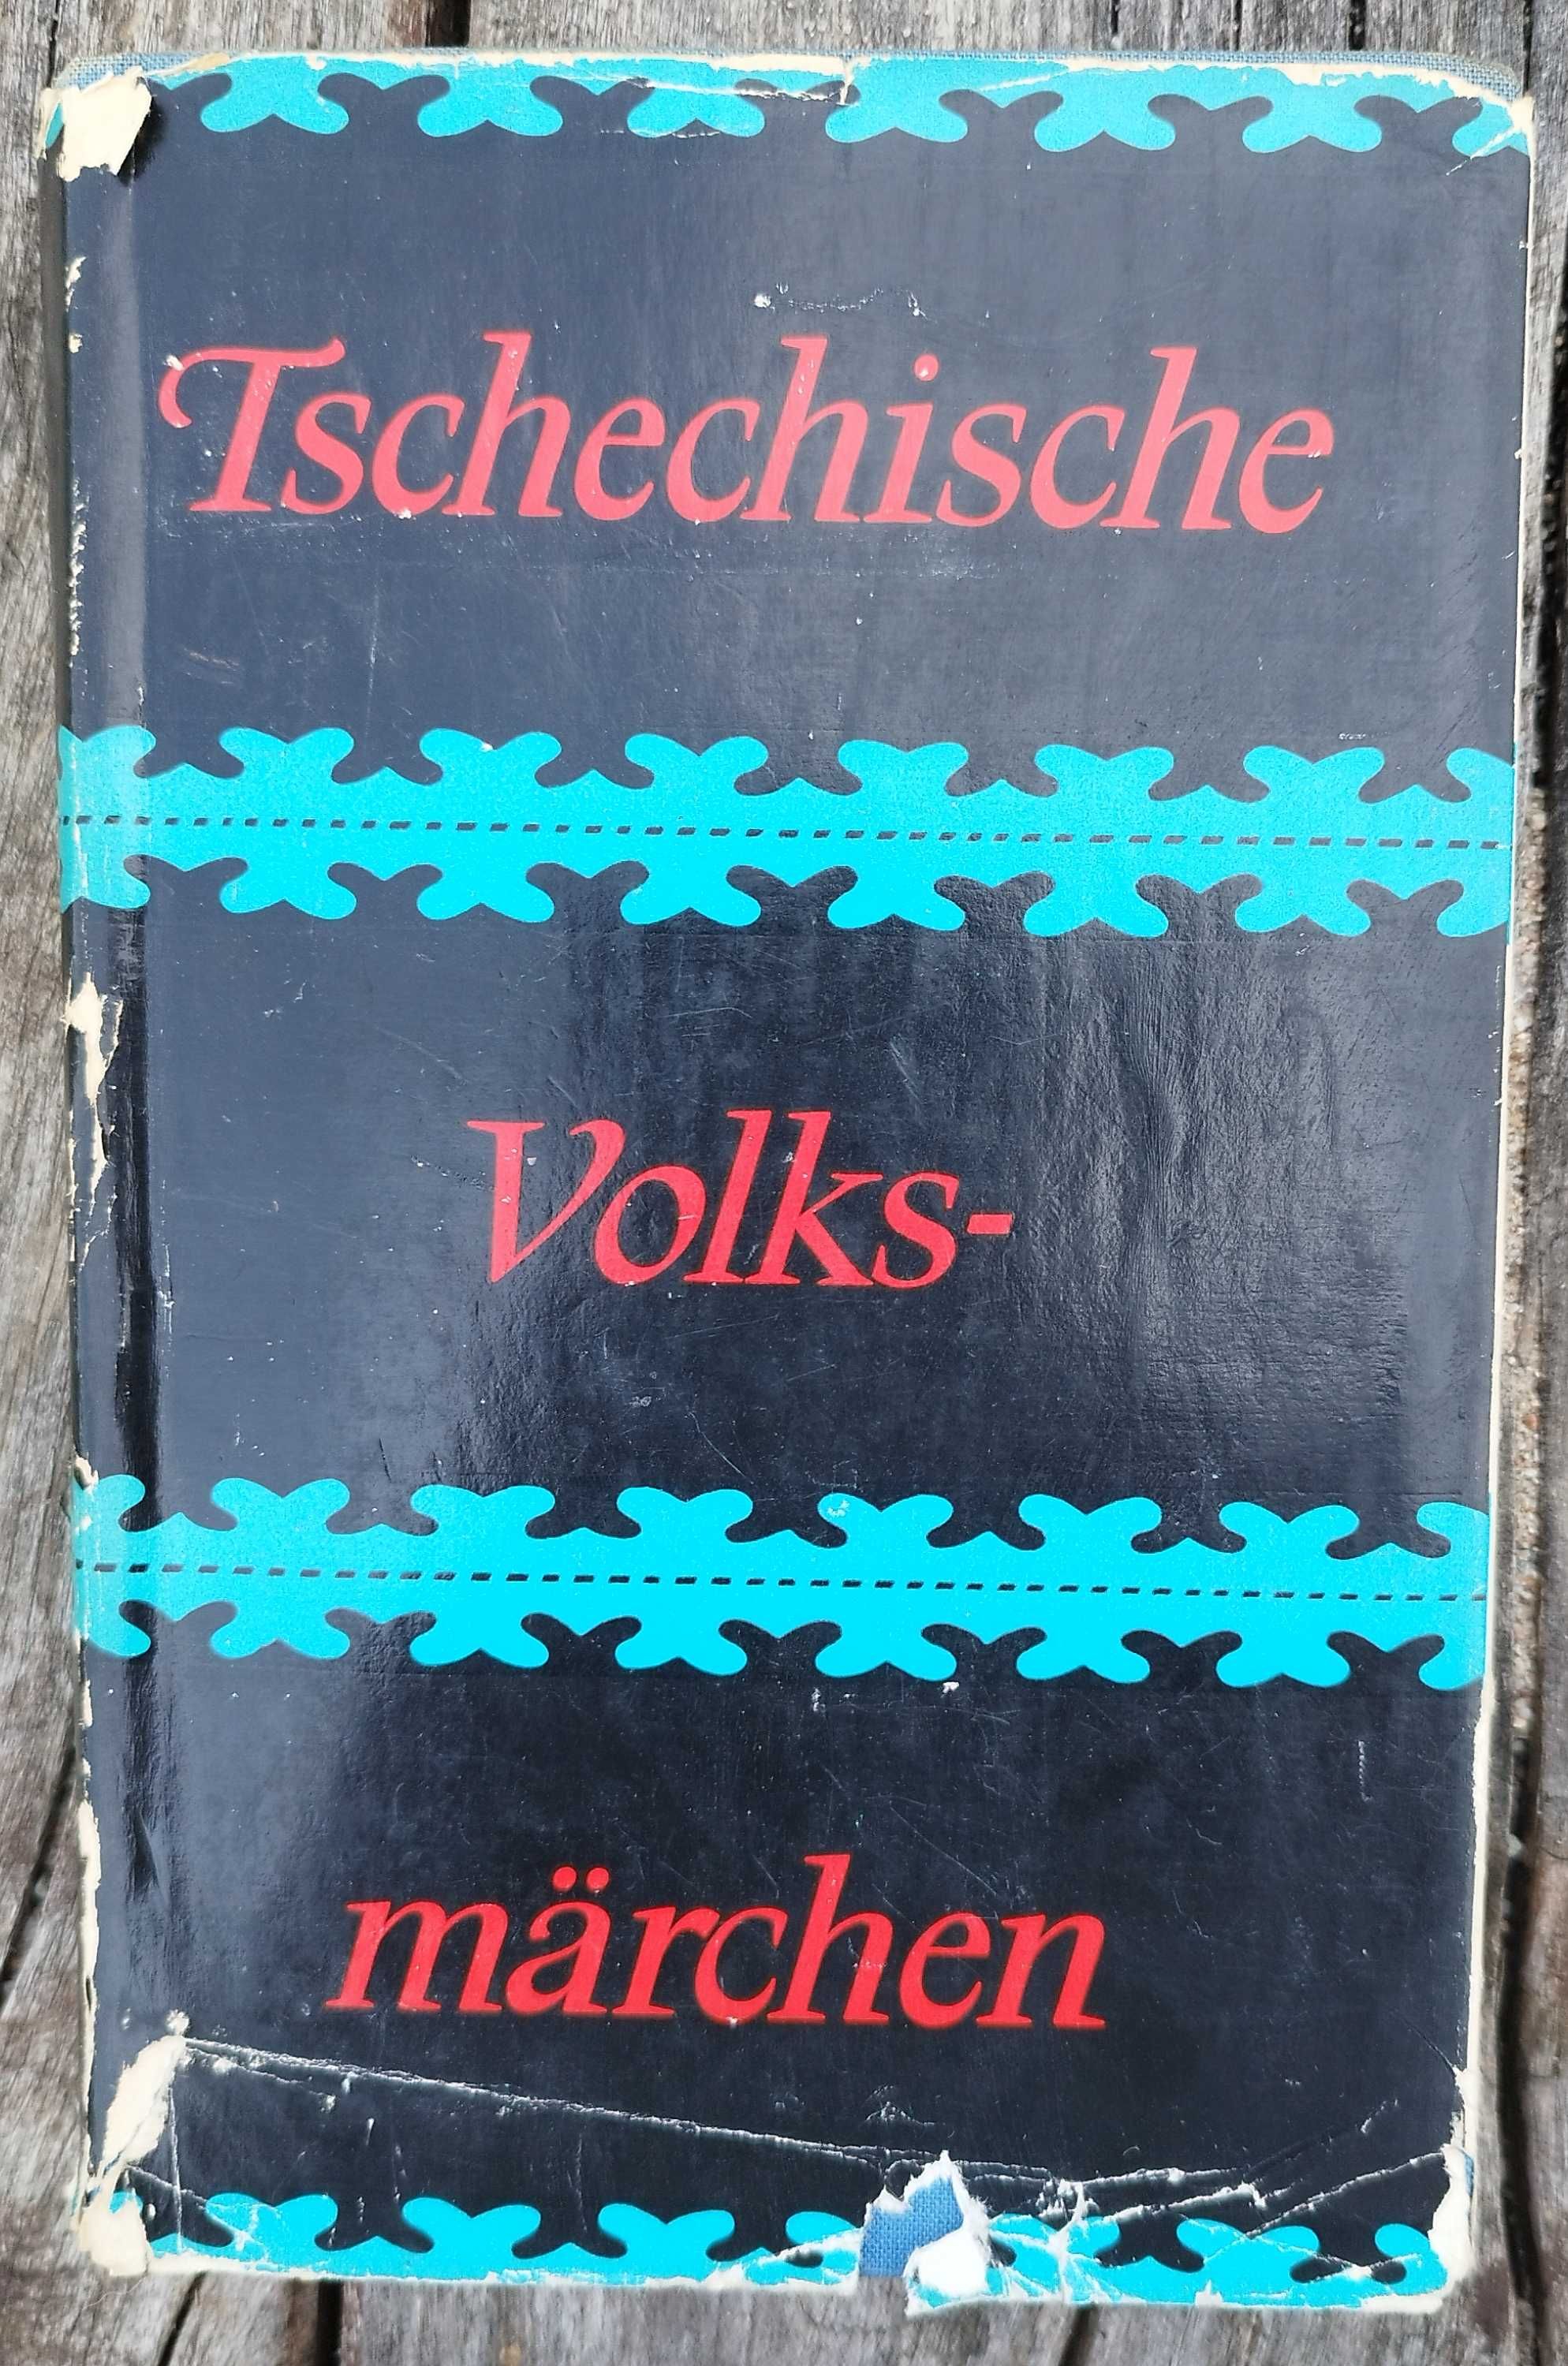 Tschechische Volks märchen 1961